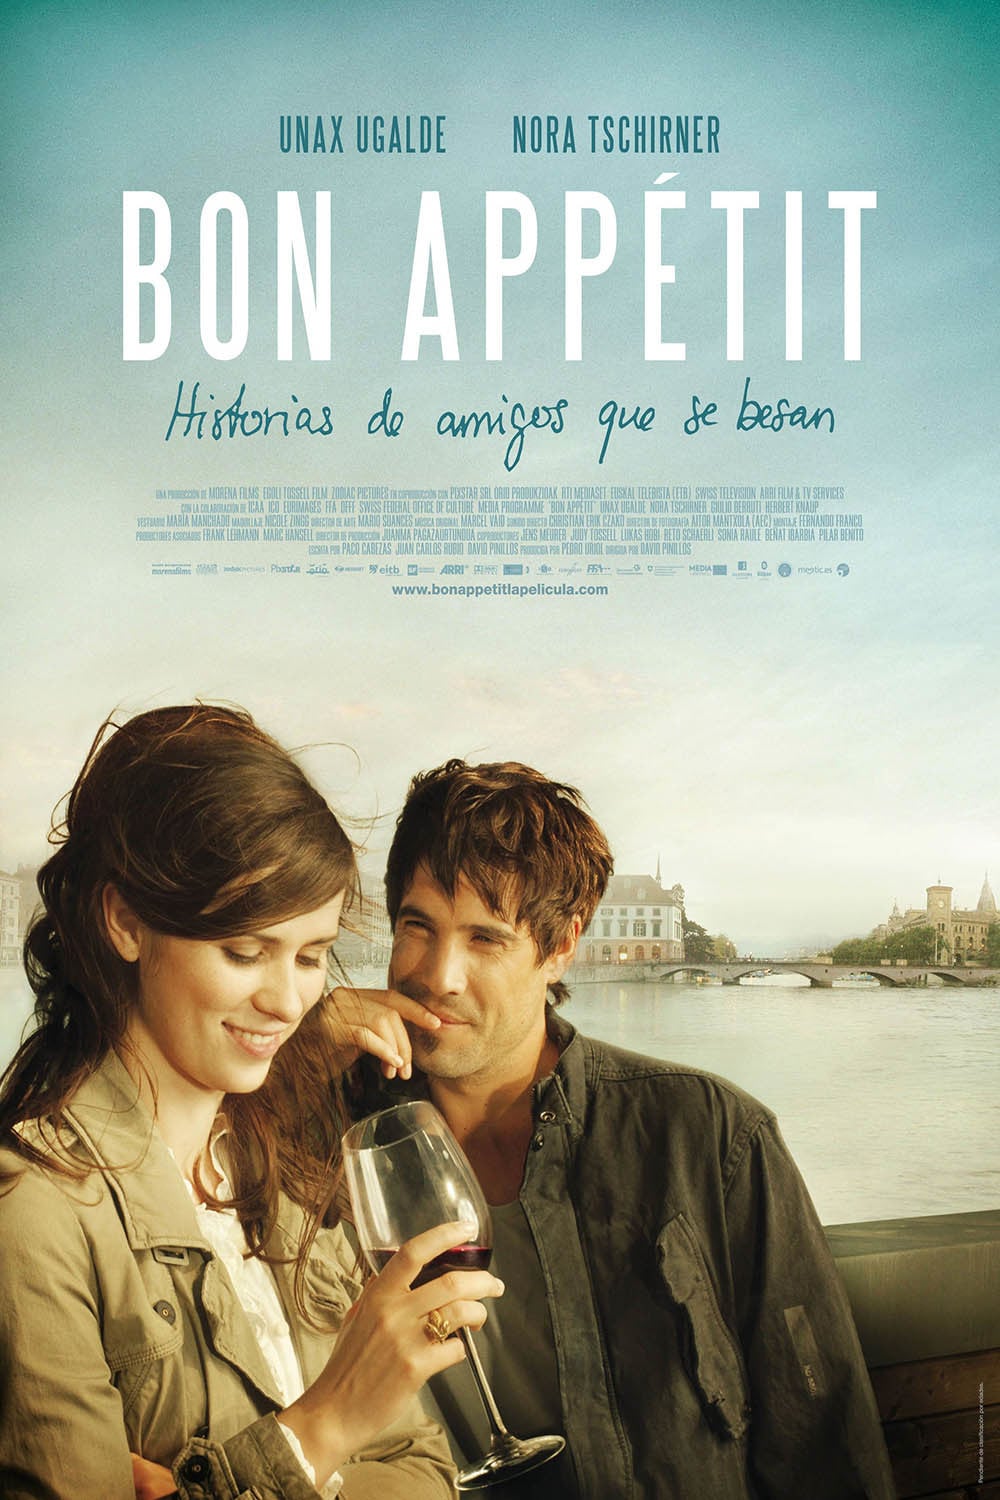 Plakat von "Bon appétit"